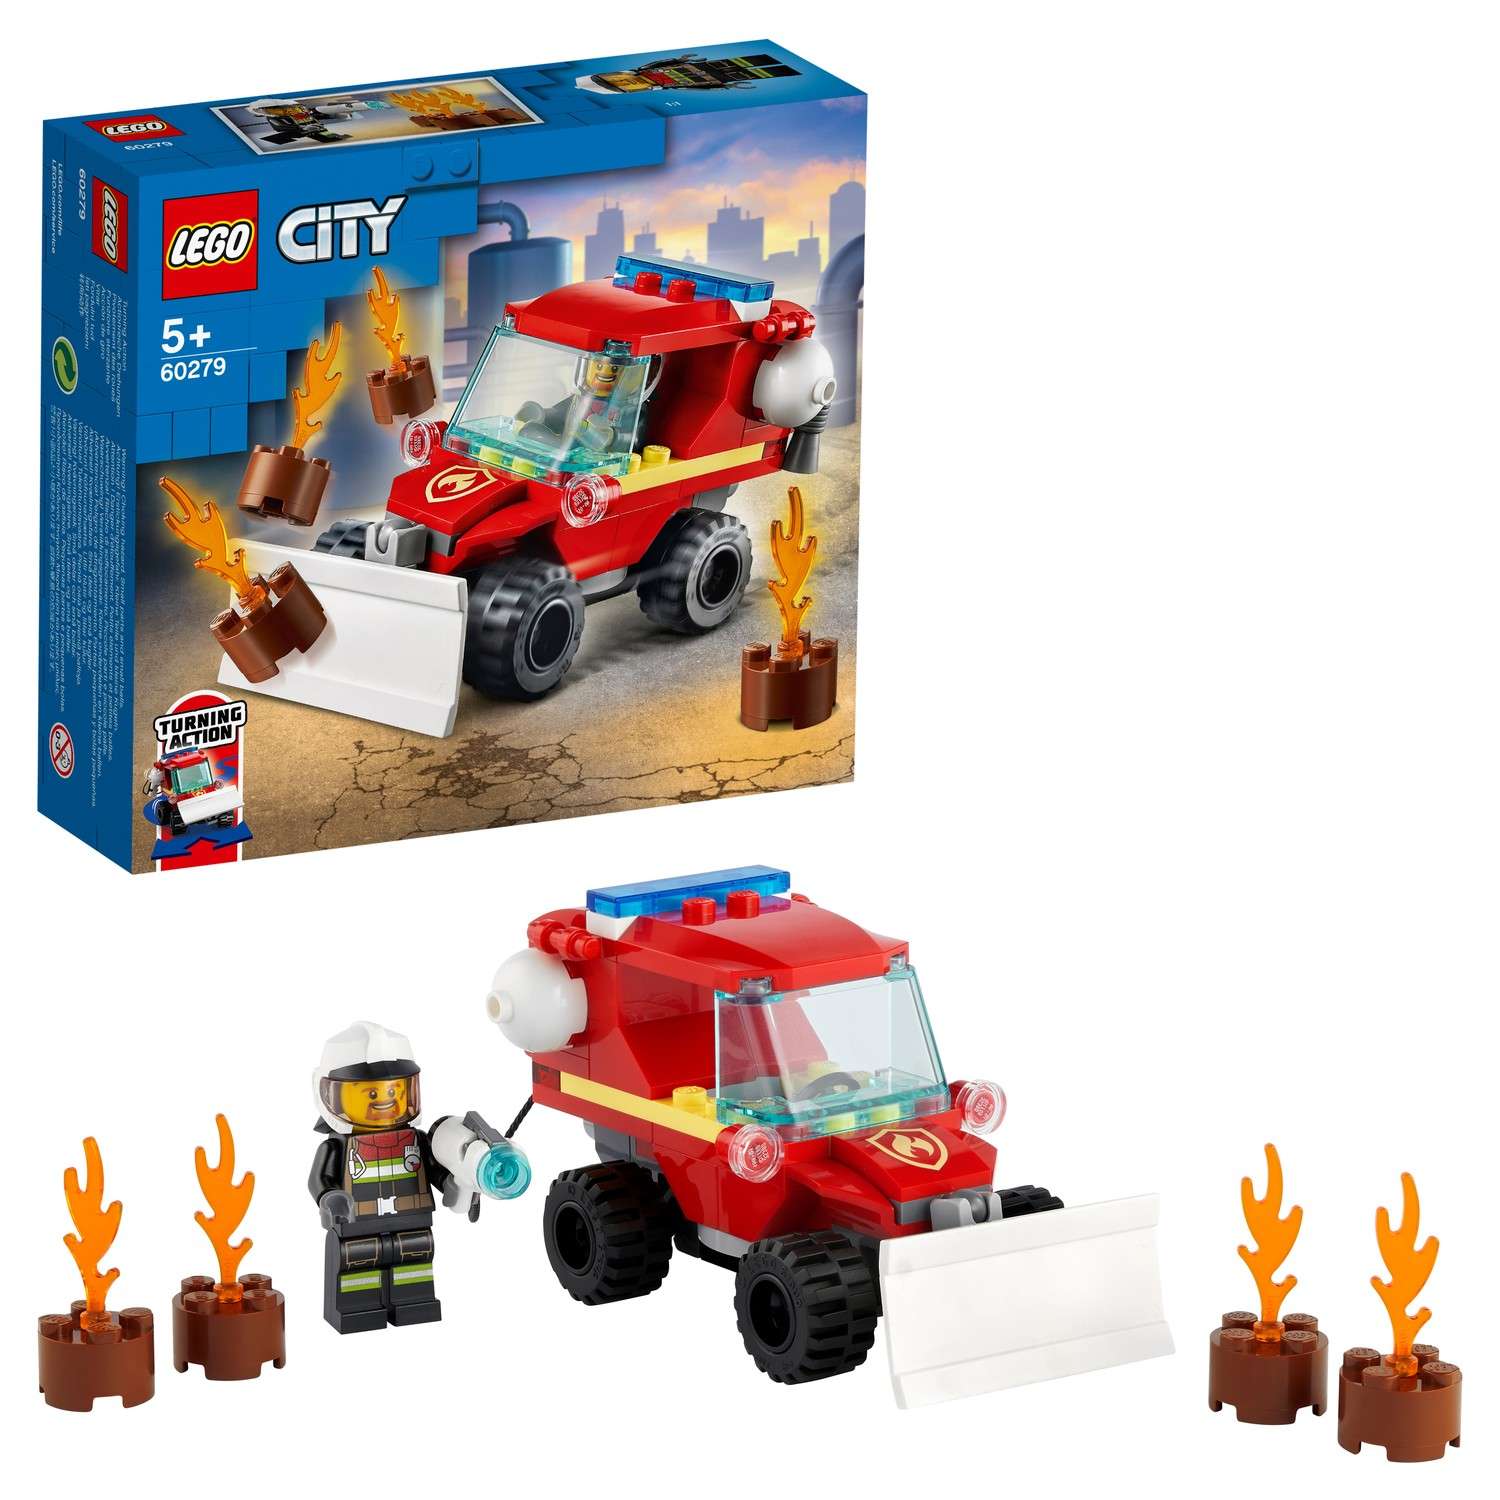 Конструктор LEGO City Fire Пожарный автомобиль 60279 - фото 1